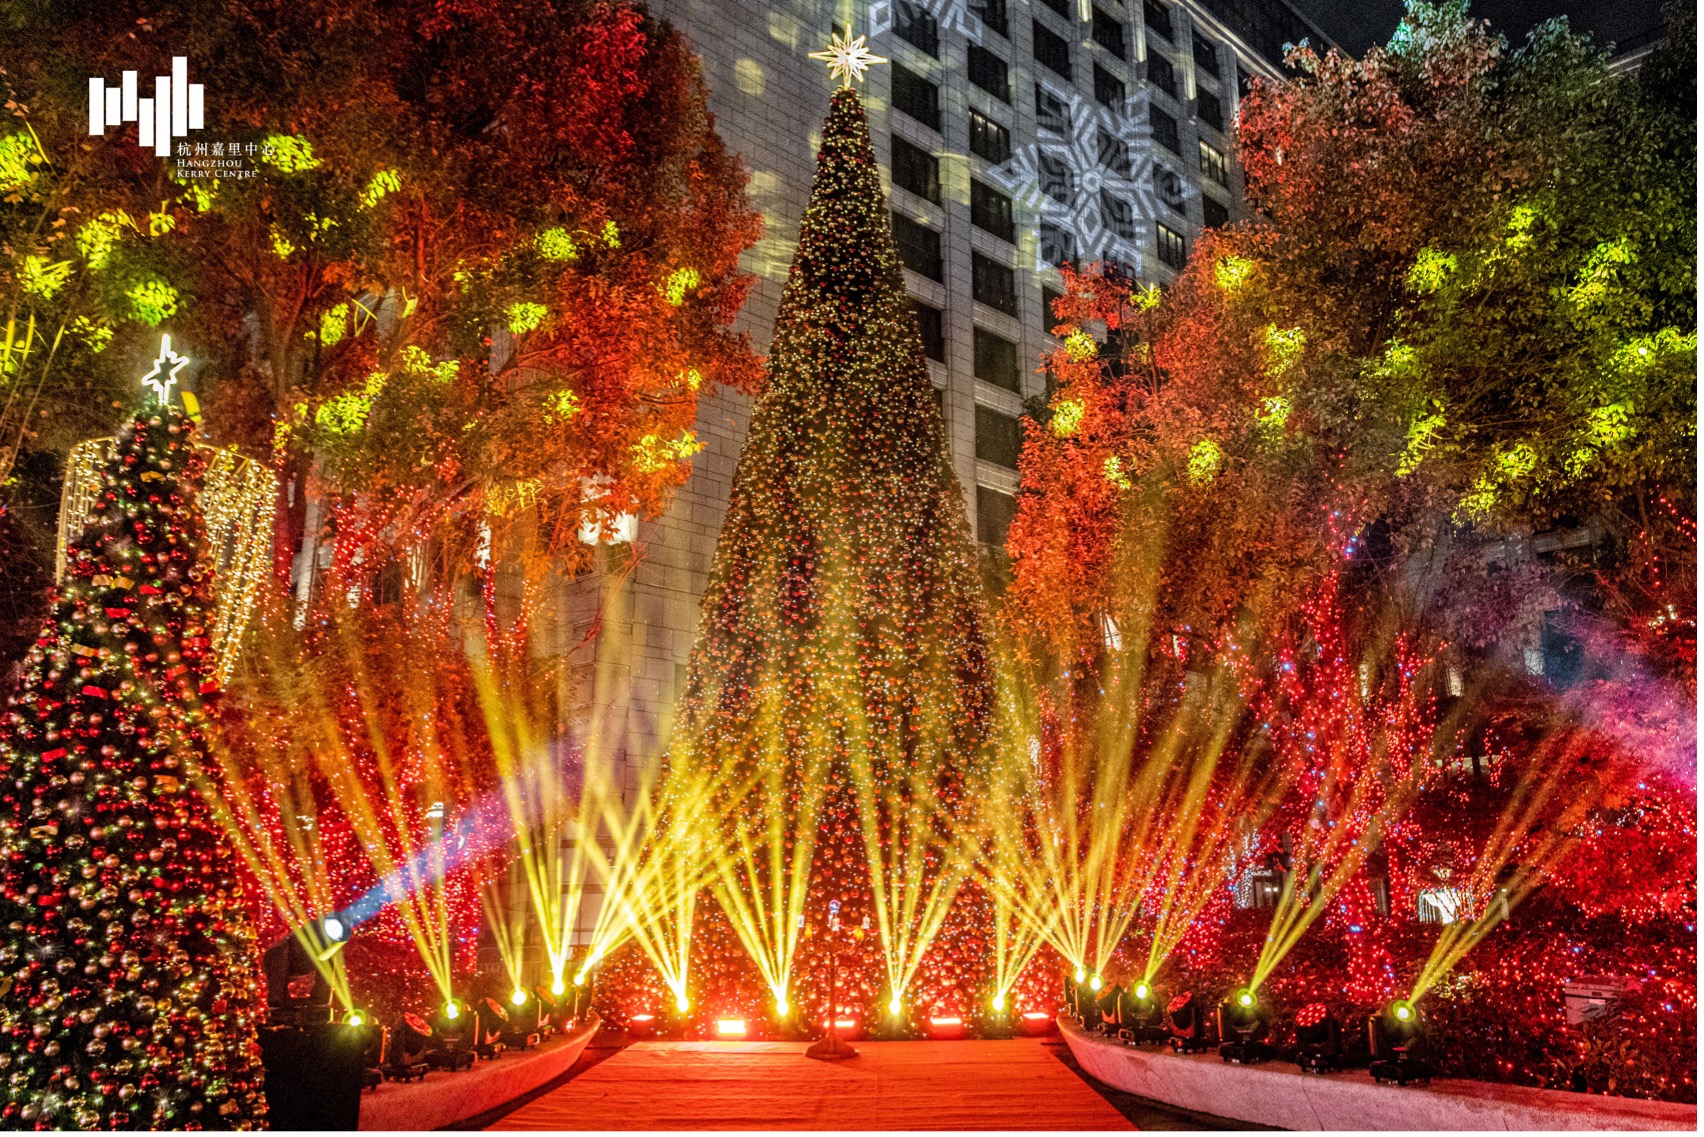 点亮希望心存爱 杭州嘉里中心2021心语心愿圣诞季